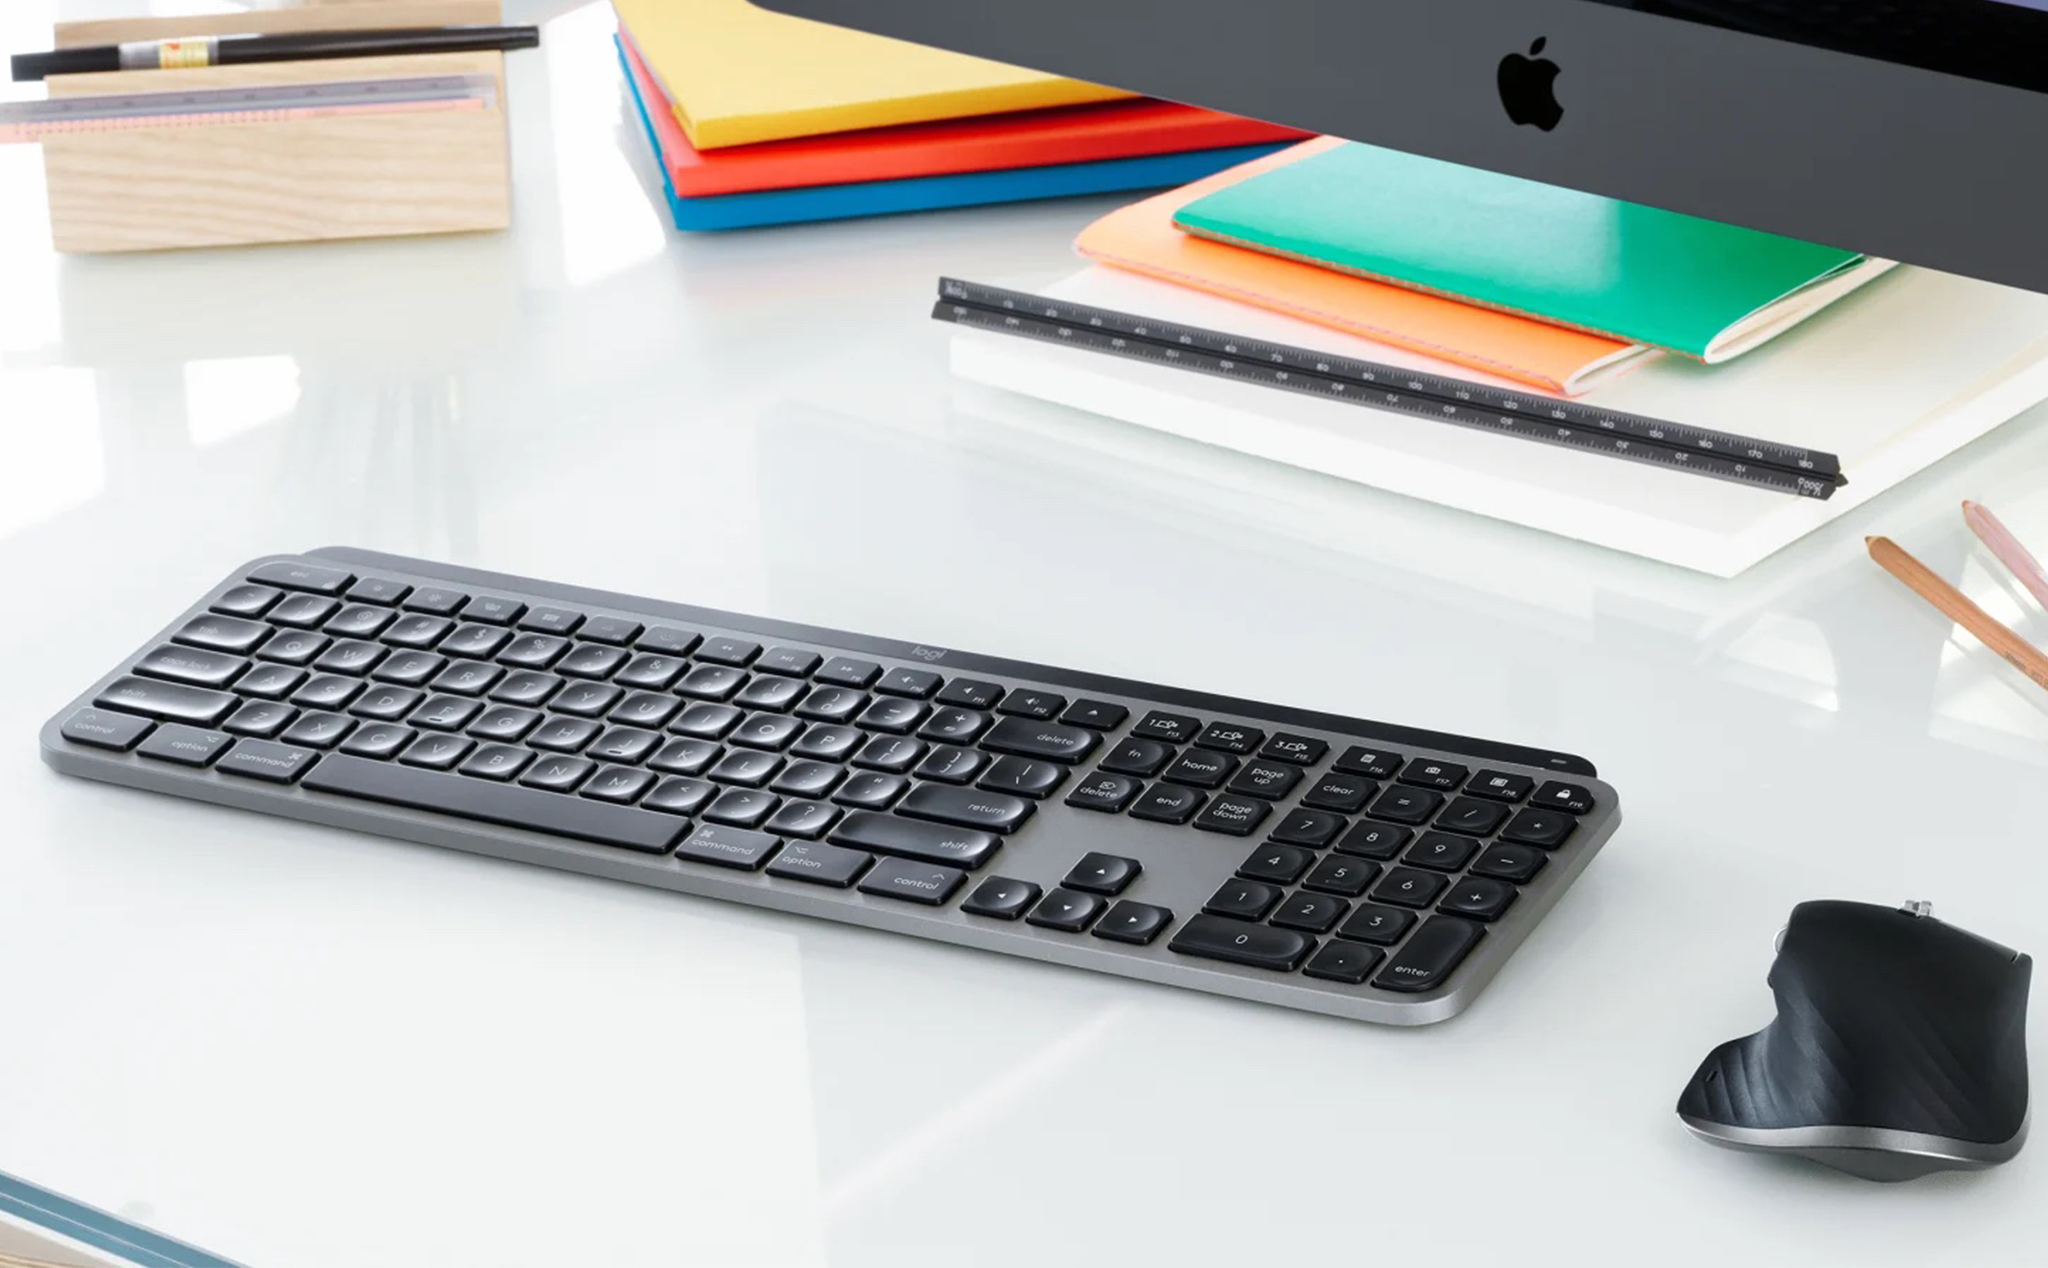 Bạn đang tìm kiếm một loại bàn phím phù hợp với máy tính Mac của mình? Bàn phím MX Keys là lựa chọn tuyệt vời. Với thiết kế đẹp mắt, khả năng kết nối nhanh chóng và các tính năng vượt trội, MX Keys là lựa chọn hàng đầu dành cho những người yêu thích công nghệ và thẩm mỹ.